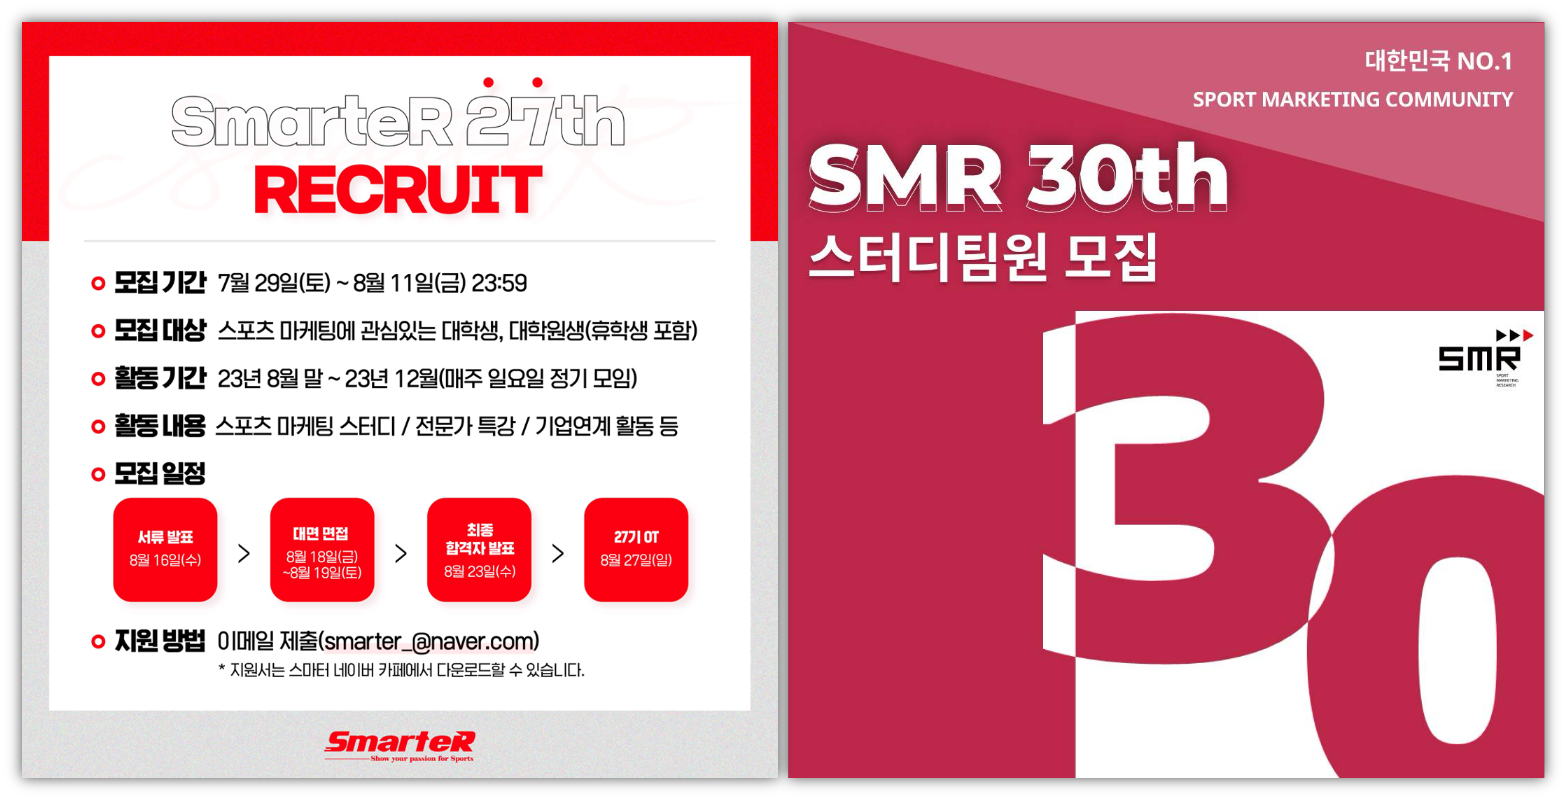 스포츠 마케팅 대표 학술 동아리 스마터/SMR